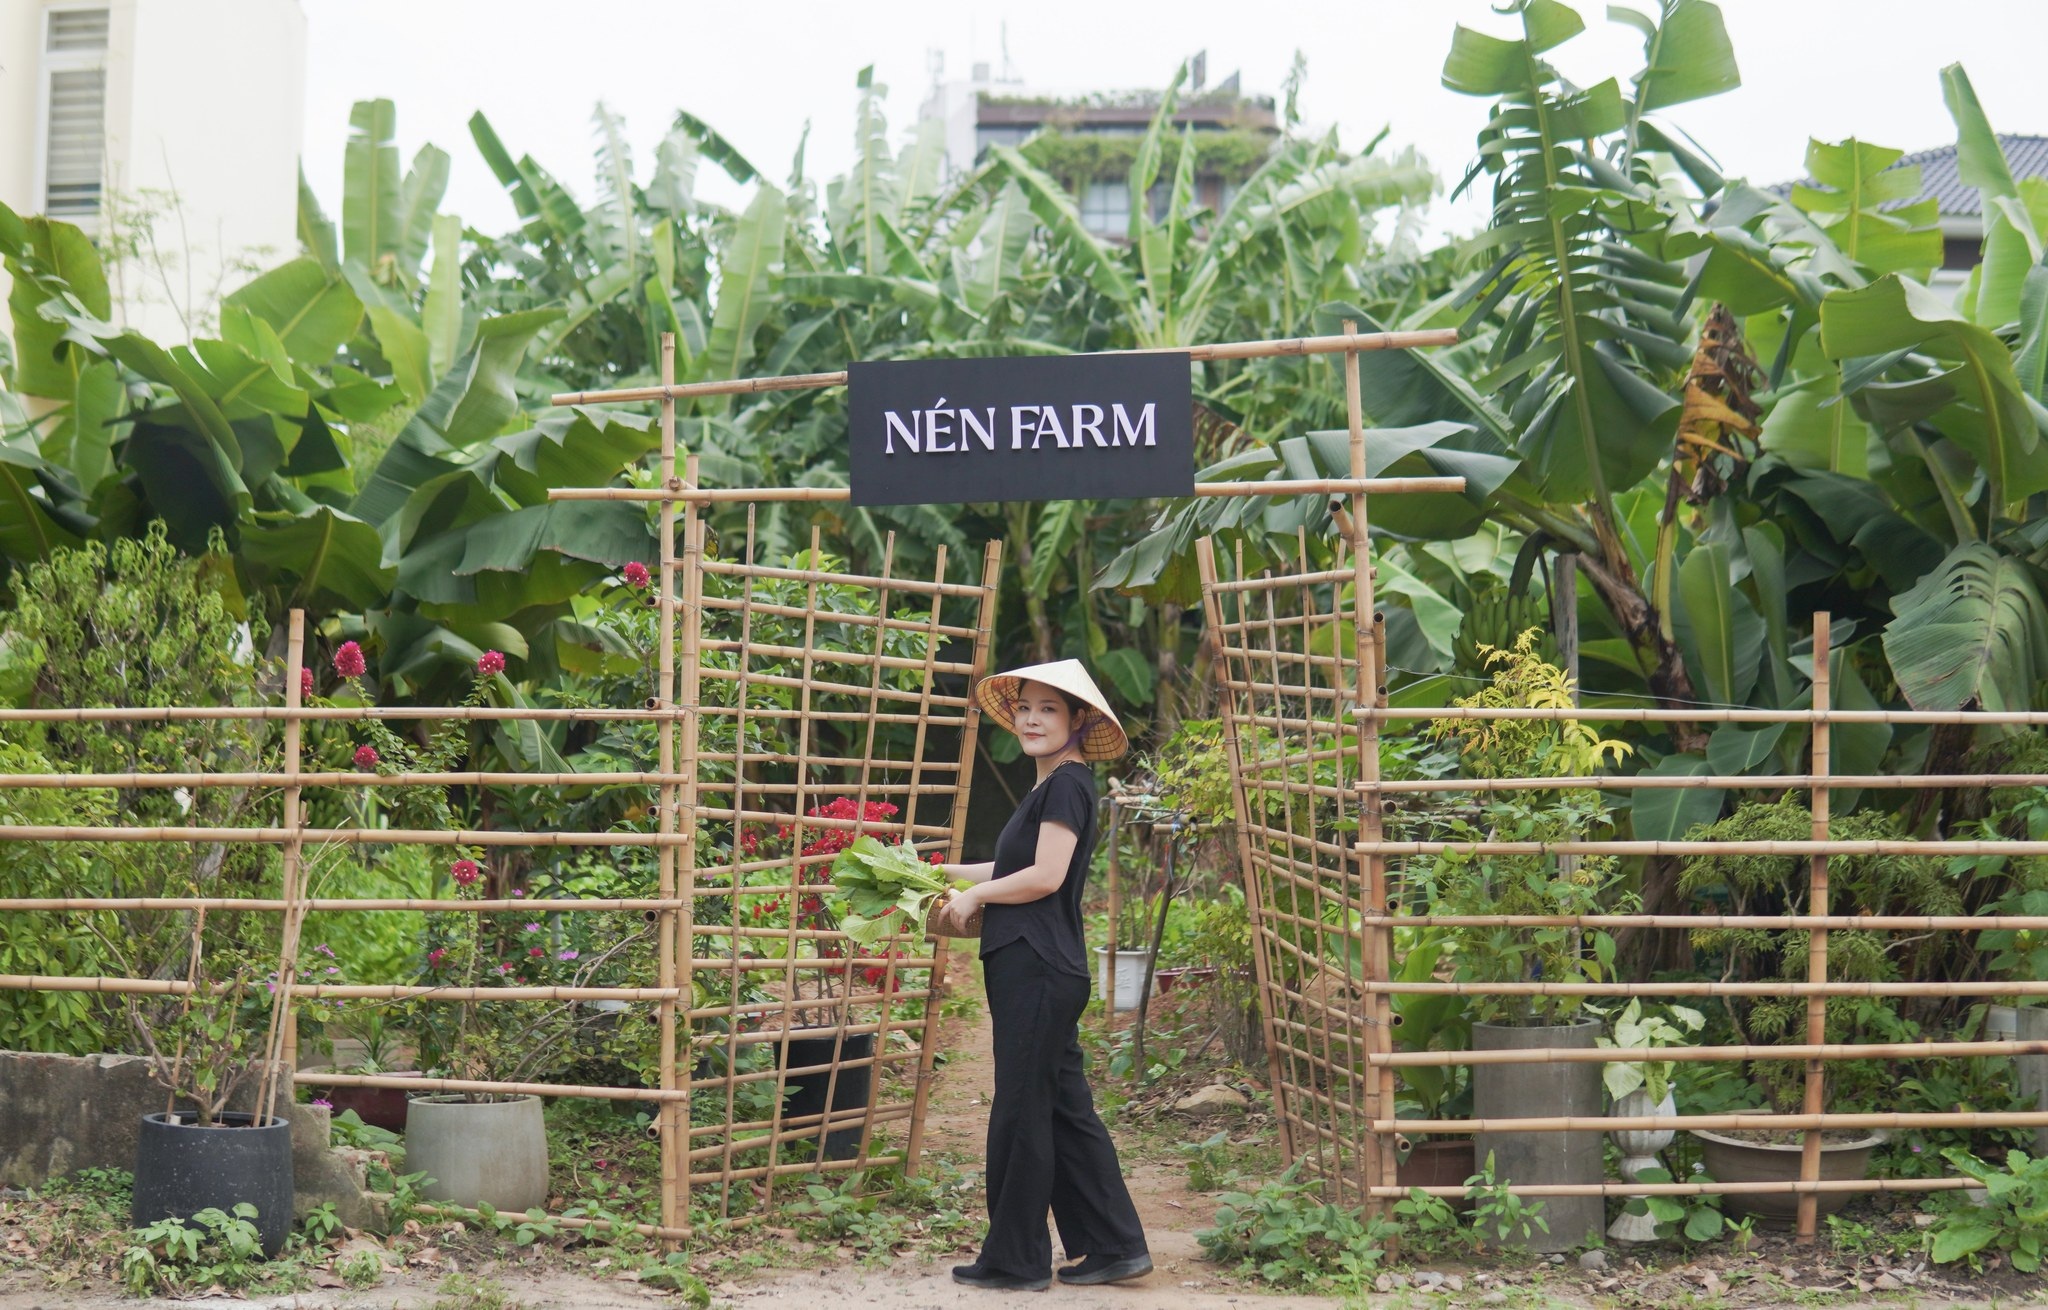 Nén Danang có khu vực trồng trọt riêng để cung cấp nguồn nguyên liệu (Ảnh: Fanpage Nén Danang).